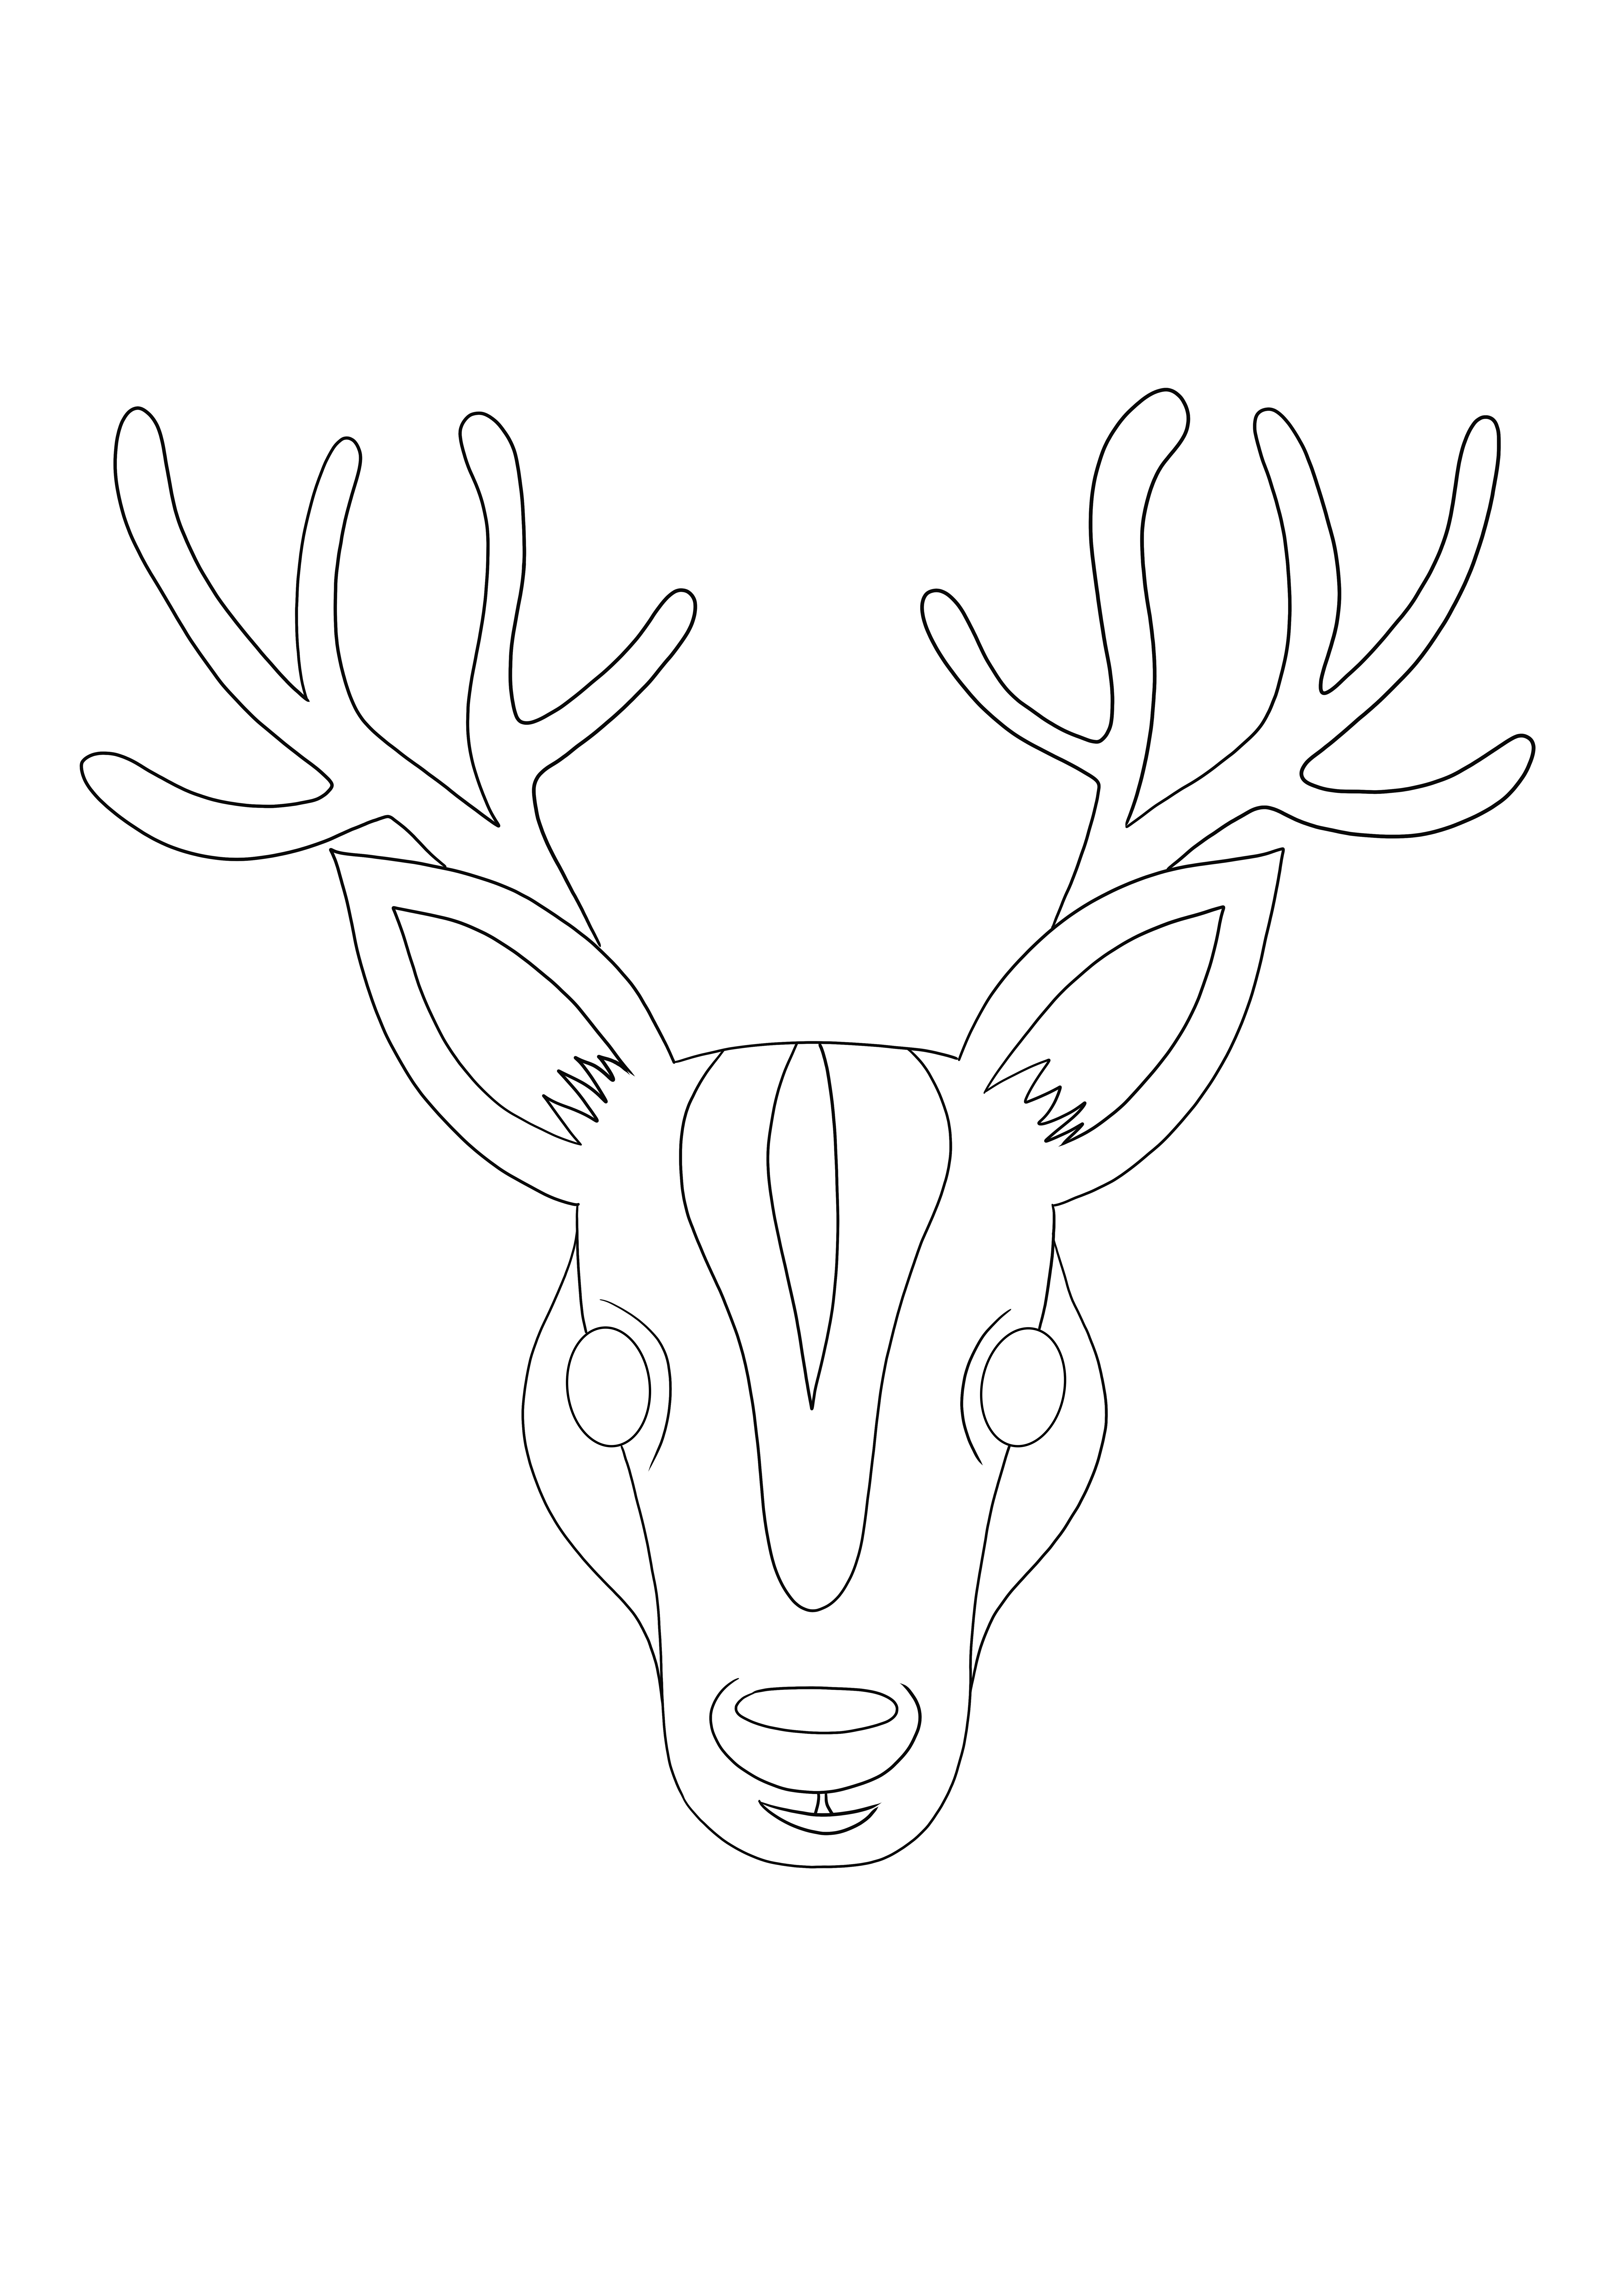 Deer Face kleurplaat gratis te printen en te downloaden voor kinderen van alle leeftijden kleurplaat